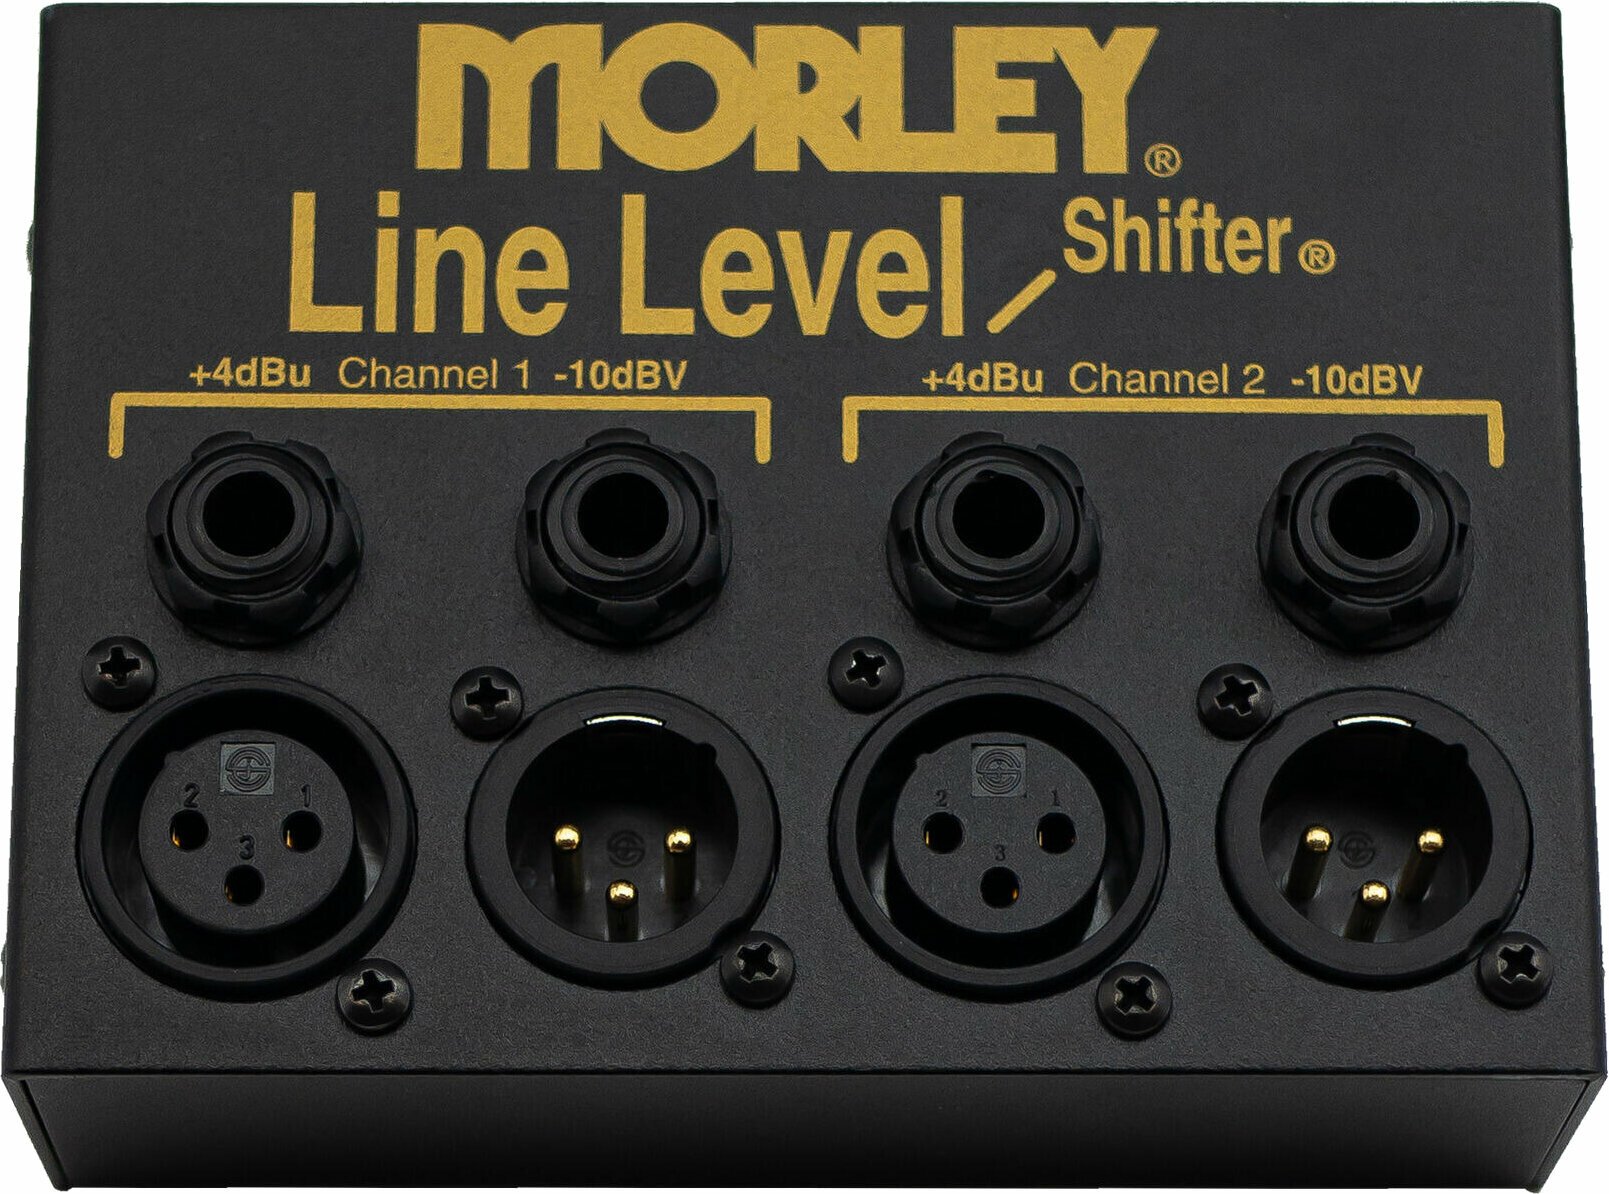 Accessoire Morley Line Level Shifter (Juste déballé)